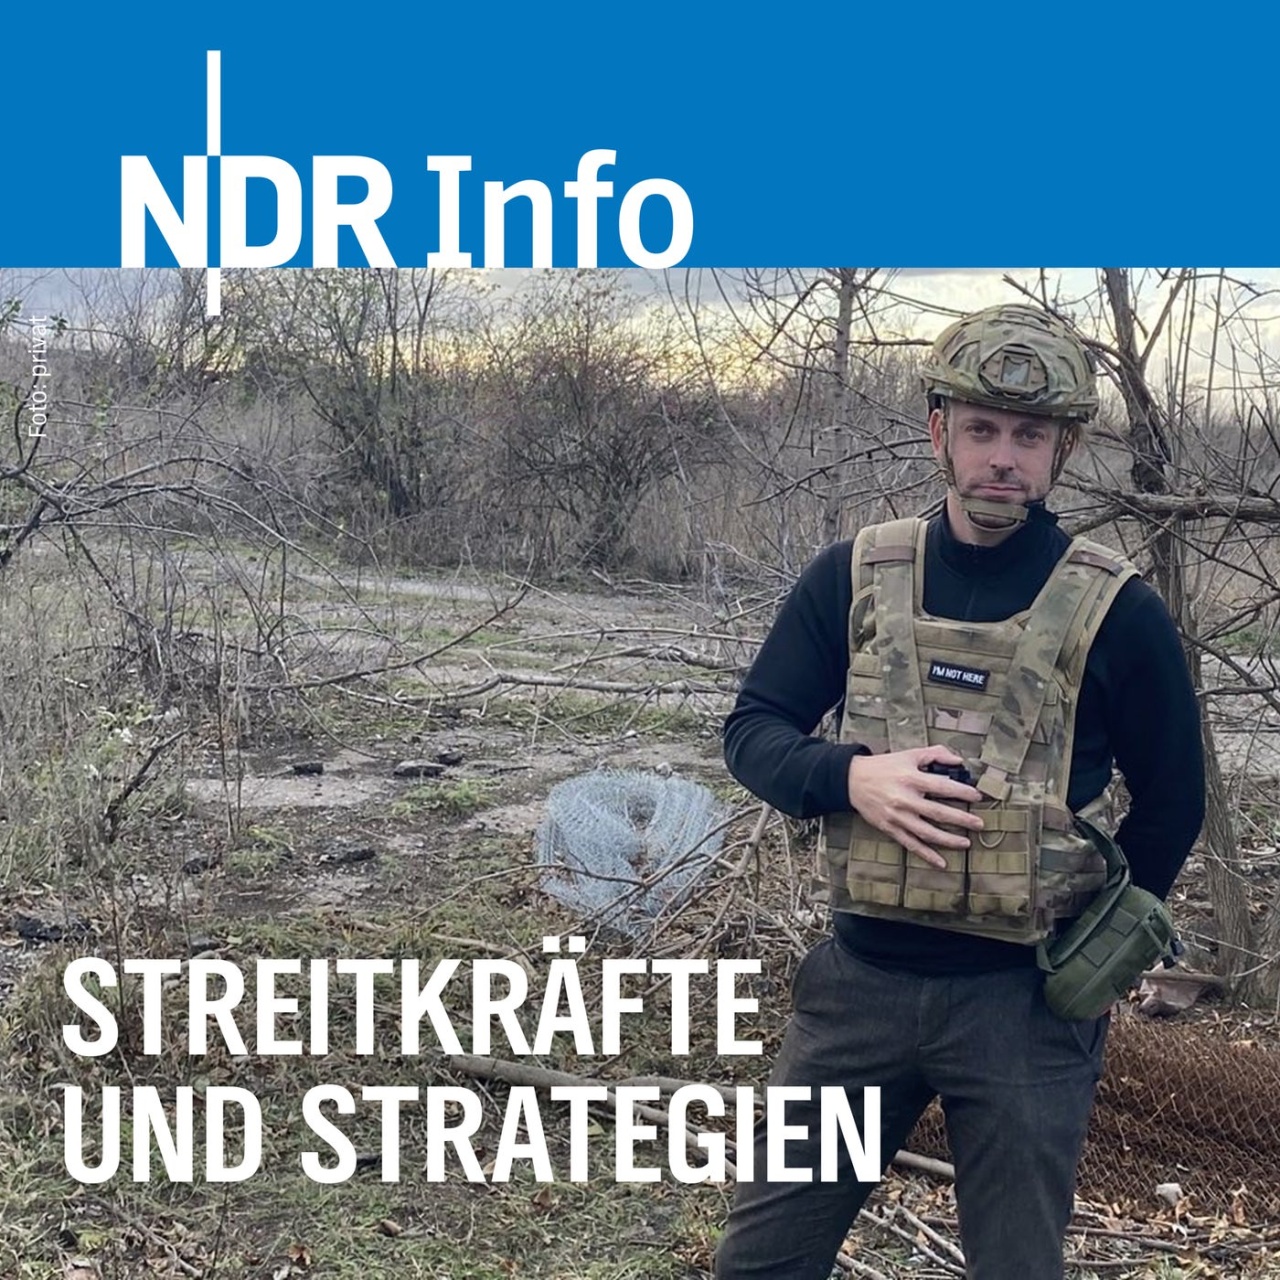 NATO-Raketenabwehr - nur symbolische Beiträge der Europäer?   -  Nachrichten - NDR Info - Sendungen - Streitkräfte und Strategien